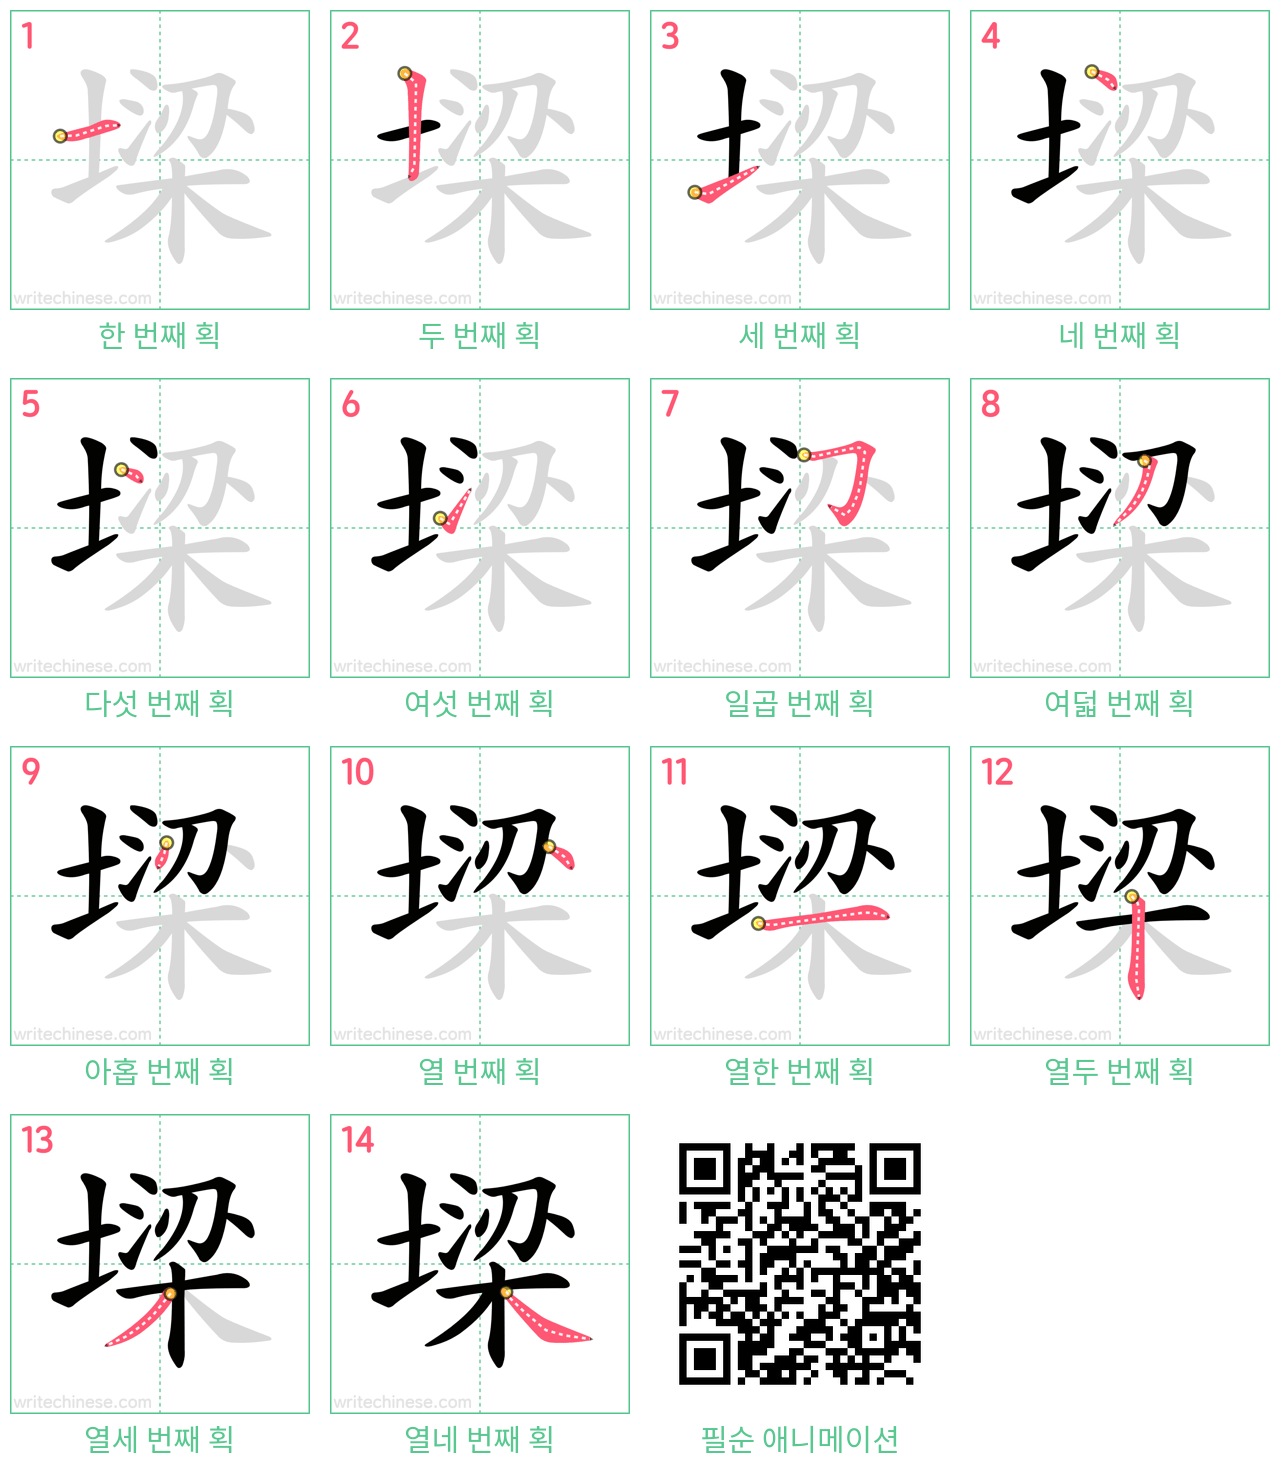 墚 step-by-step stroke order diagrams